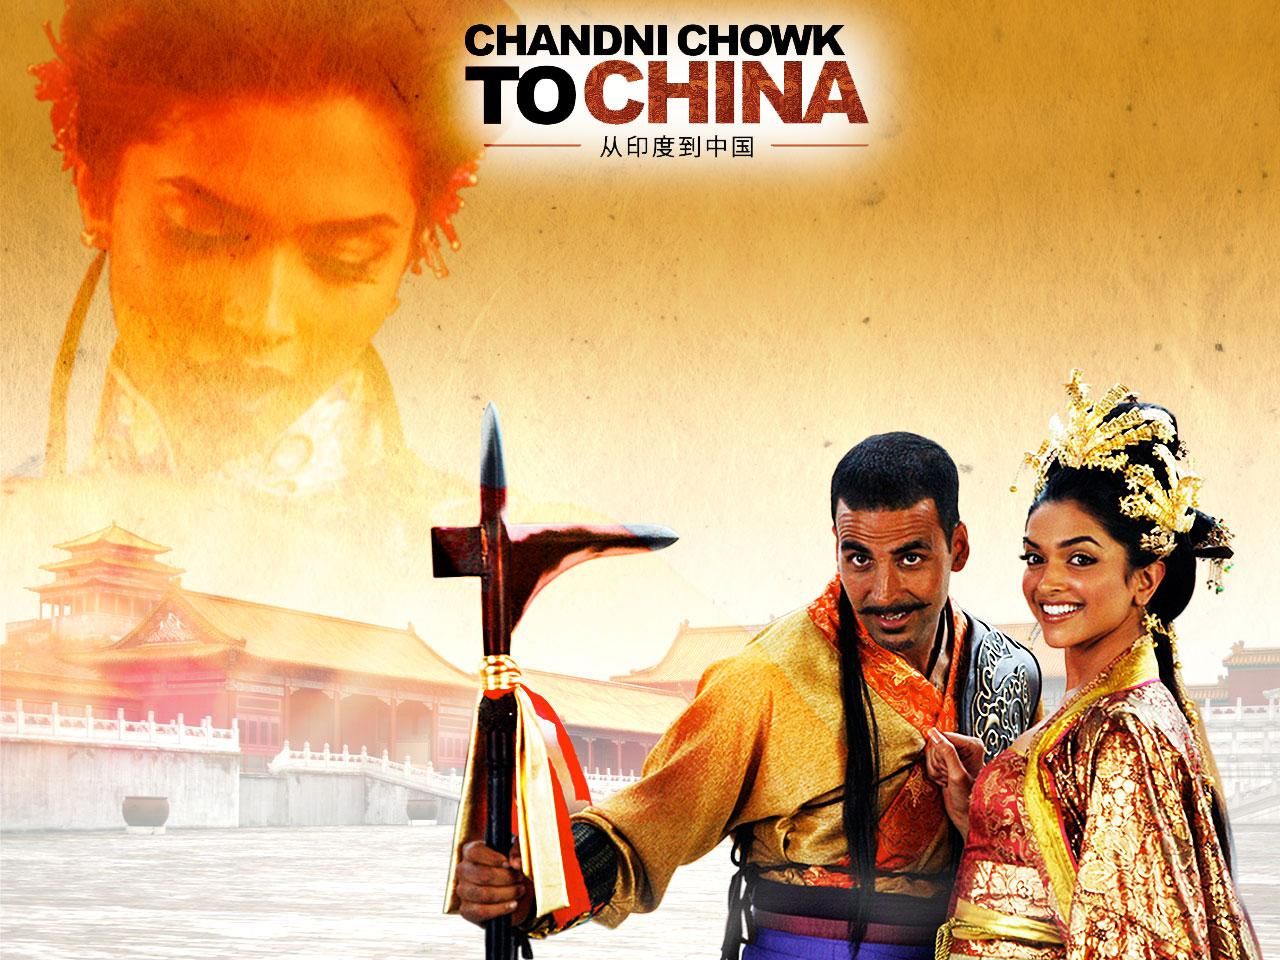 Фильм С Чандни Чоука в Китай | Chandni Chowk to China - лучшие обои для рабочего стола